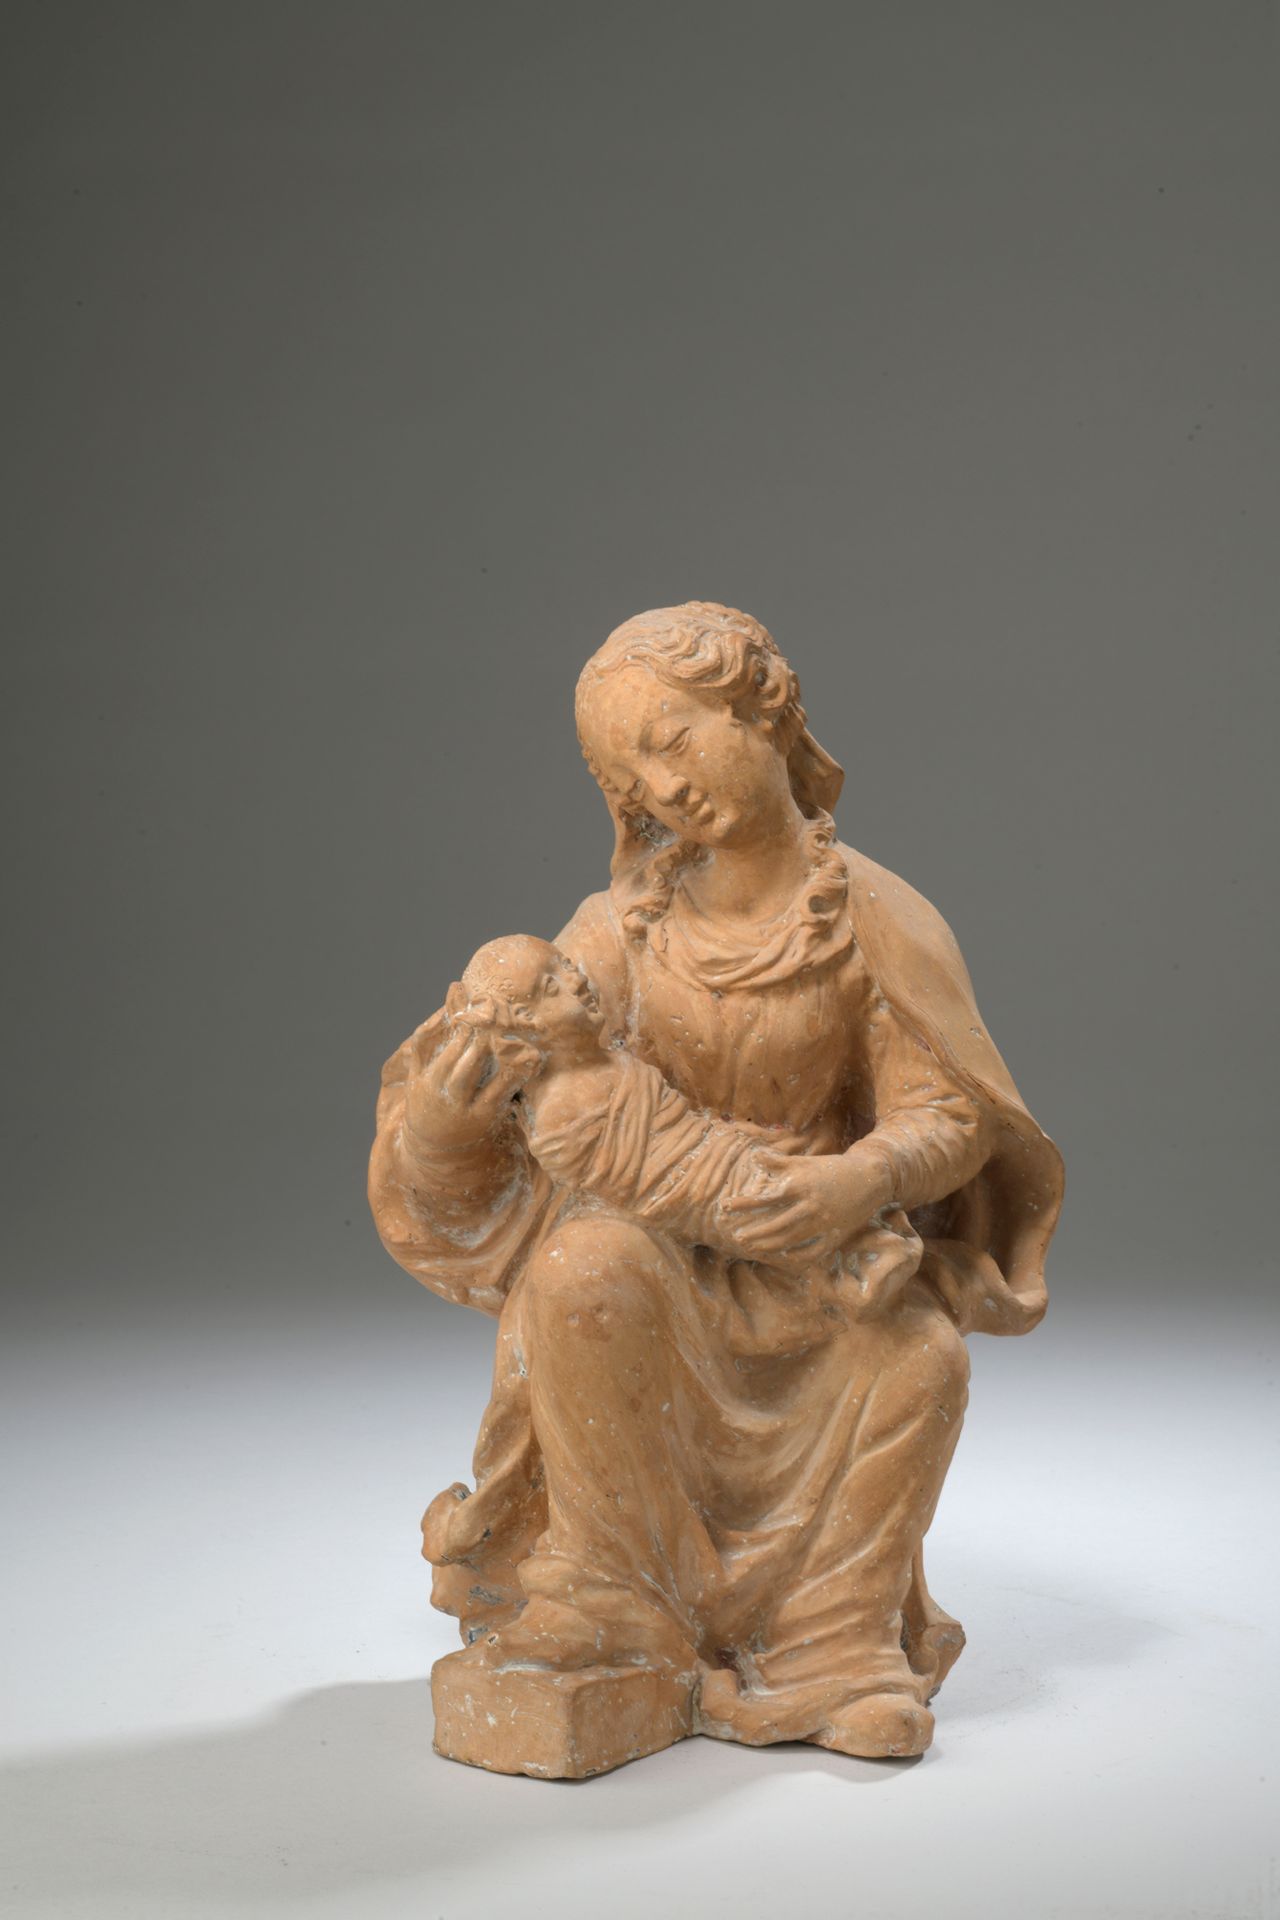 Null Escuela francesa hacia 1600

La Virgen y el Niño

Terracota

H. 26,5 cm 

P&hellip;